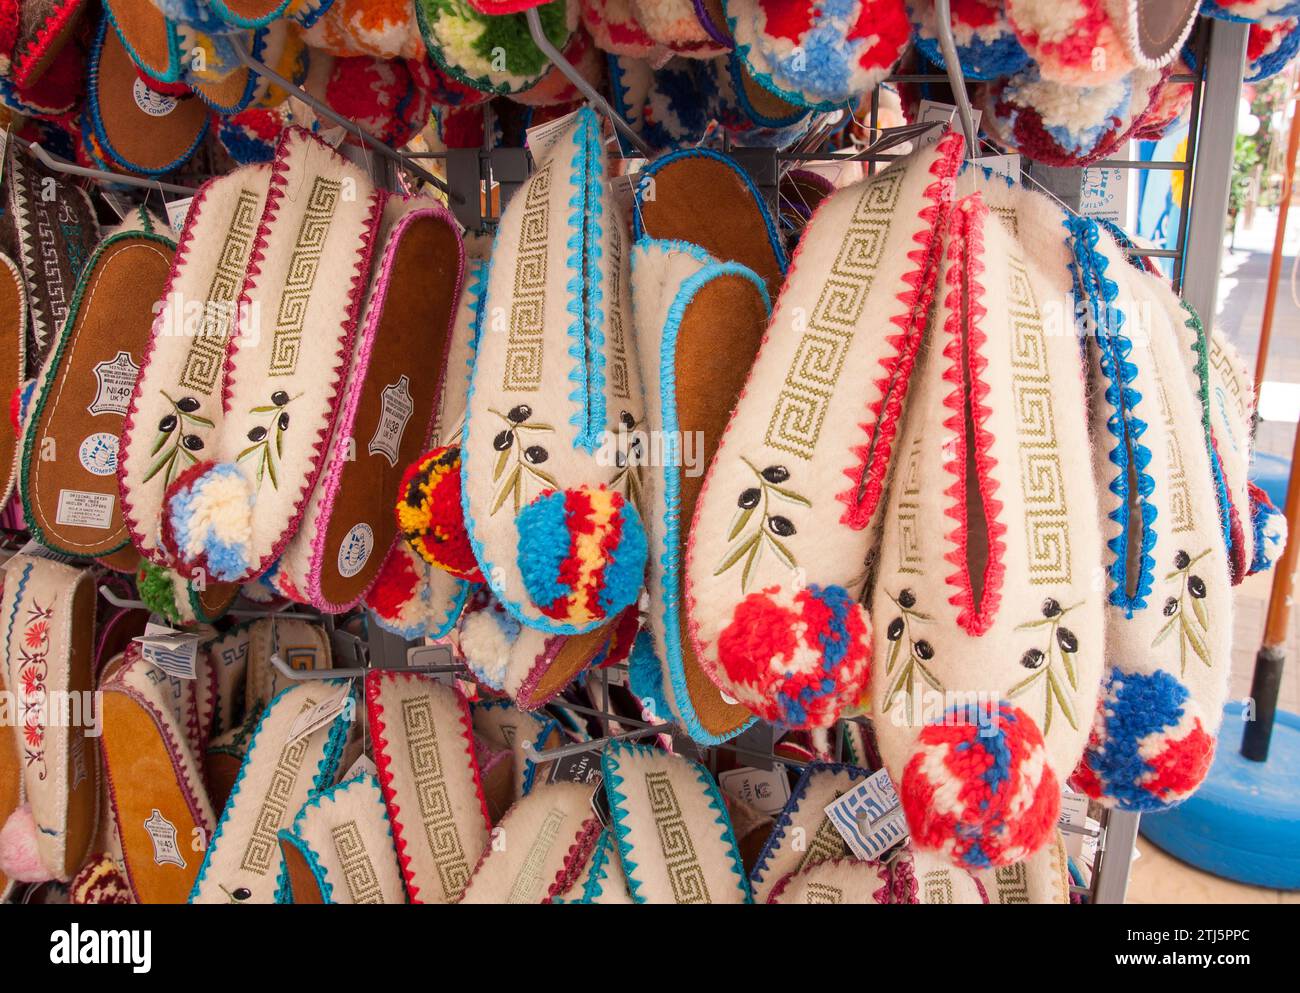 Chaussons grecs traditionnels dans une boutique de souvenirs, Mastichari, Kos (Cos), du Dodécanèse, Grèce, région sud de la Mer Egée Banque D'Images